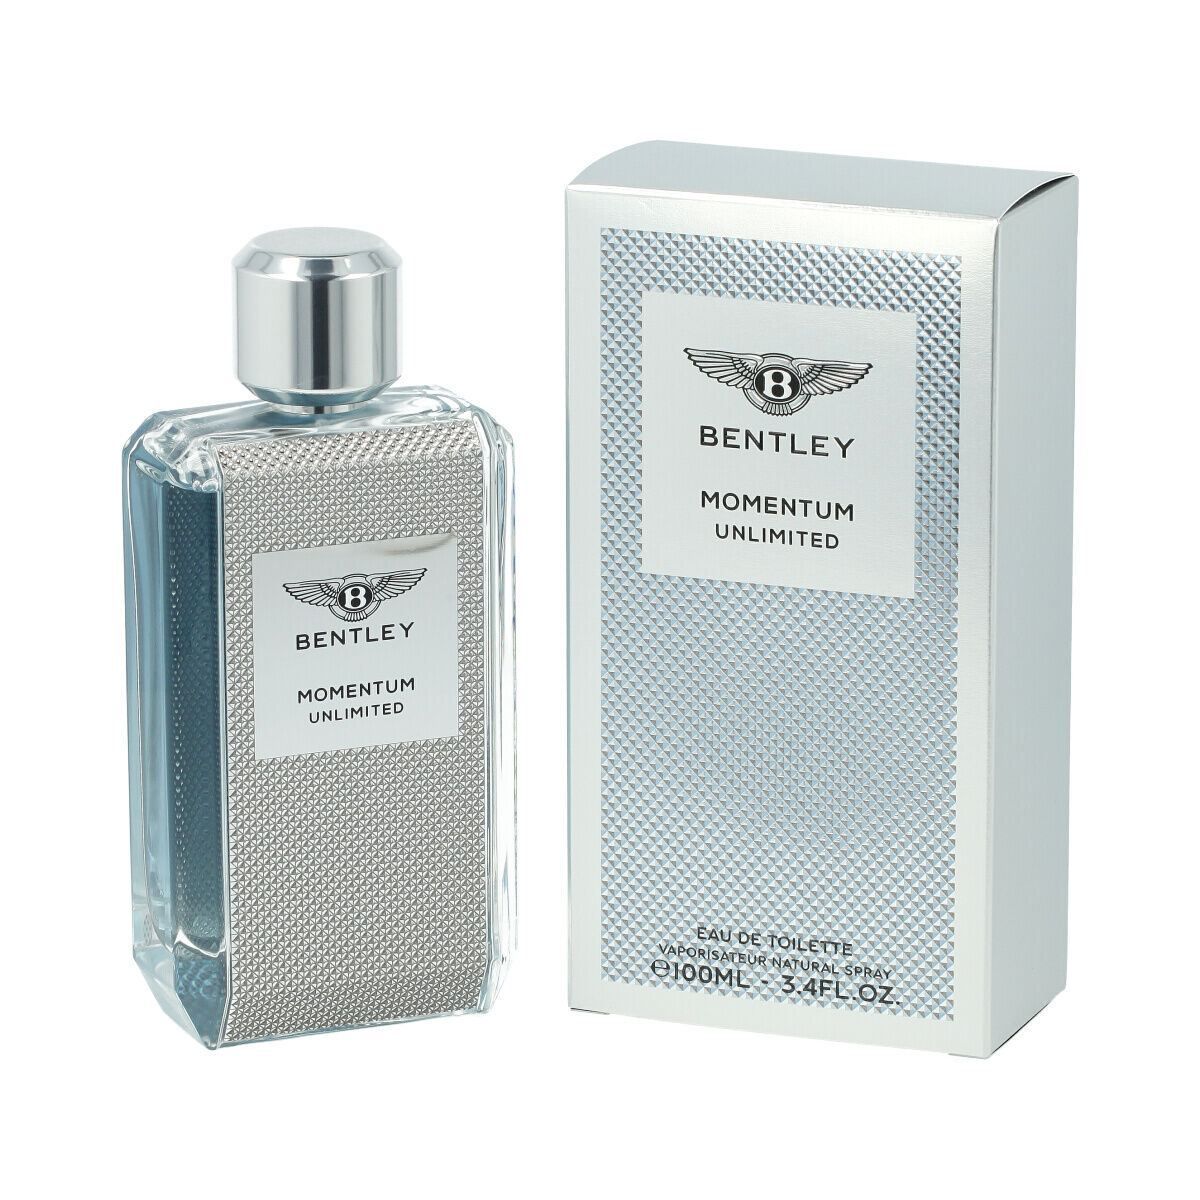 Parfum Homme Bentley EDT Momentum Unlimited (100 ml)